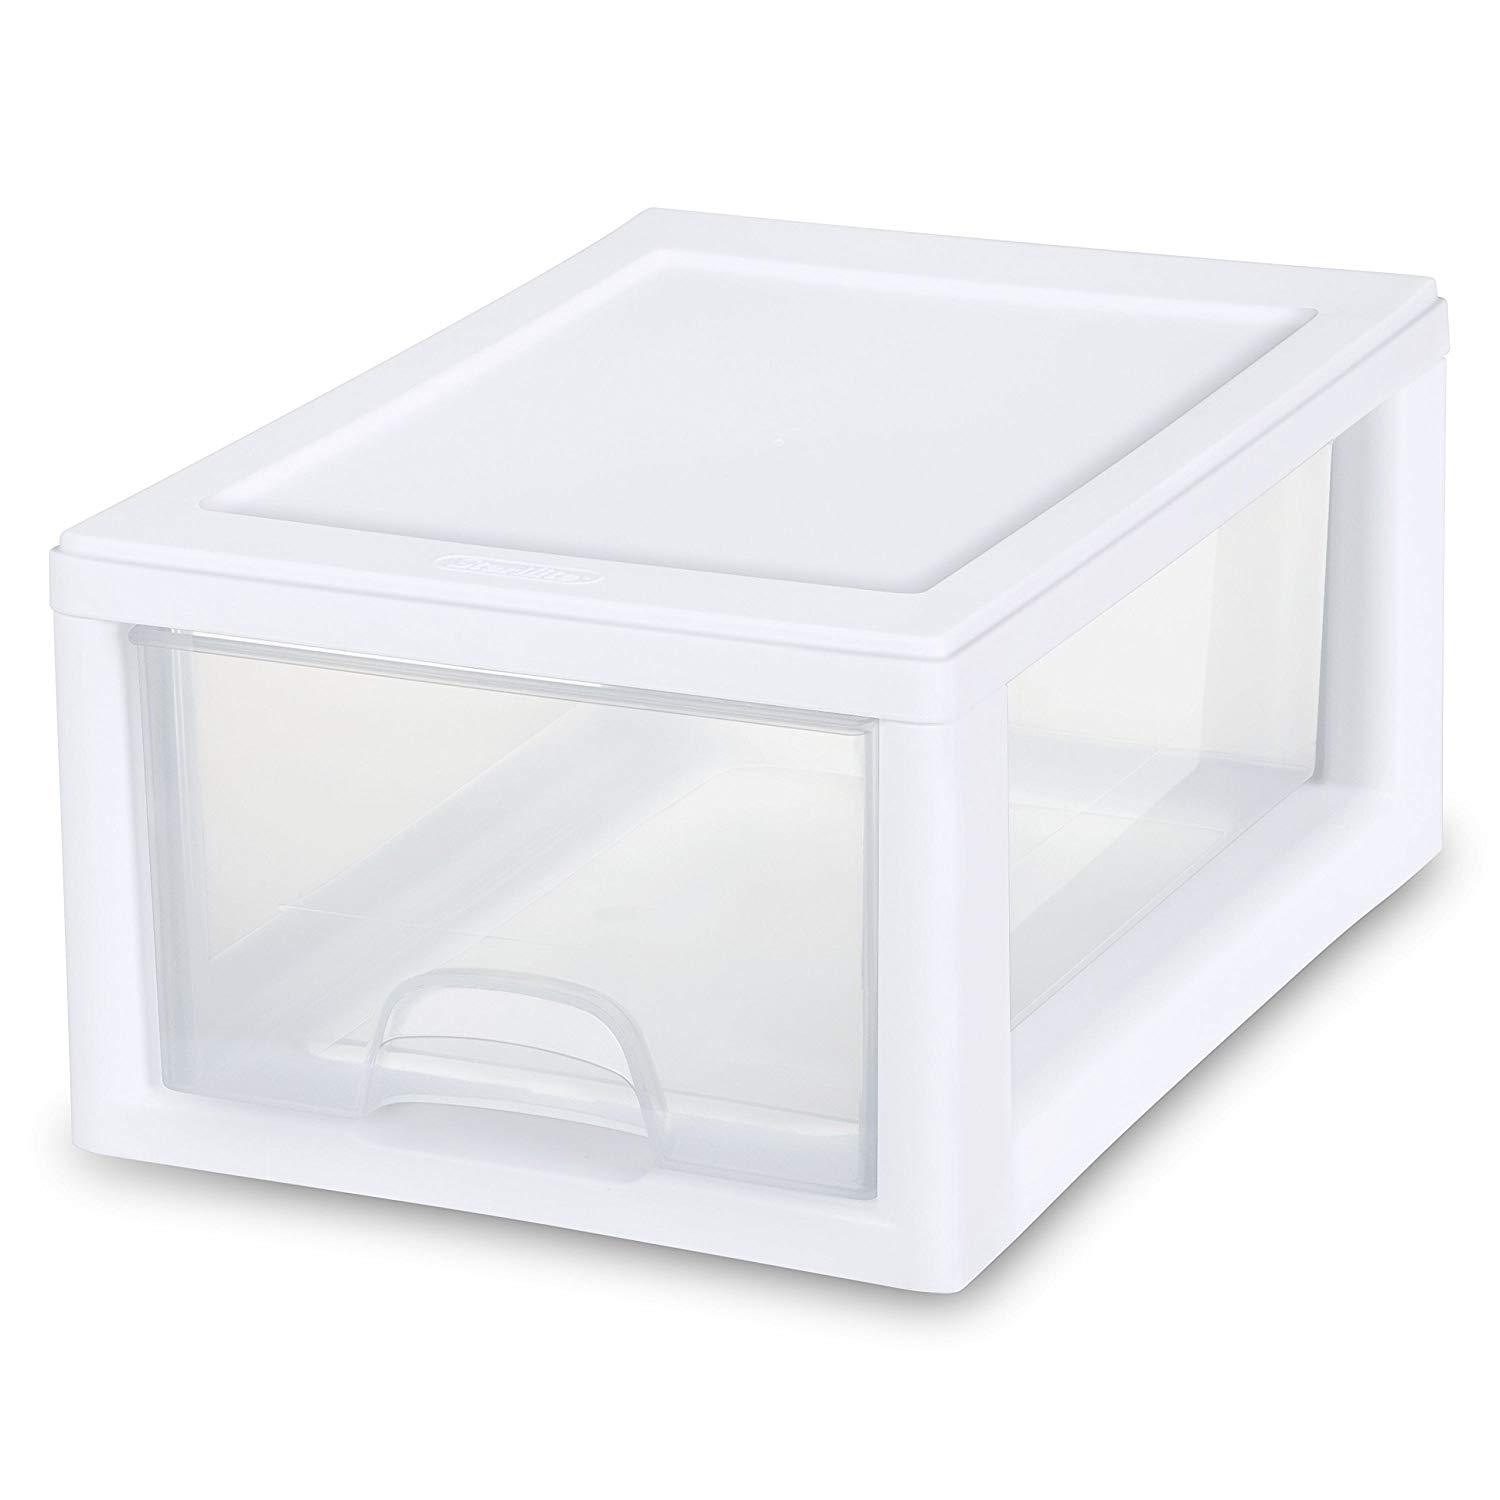 Sterilite 6 Qt./5.7 L Storage Box, White